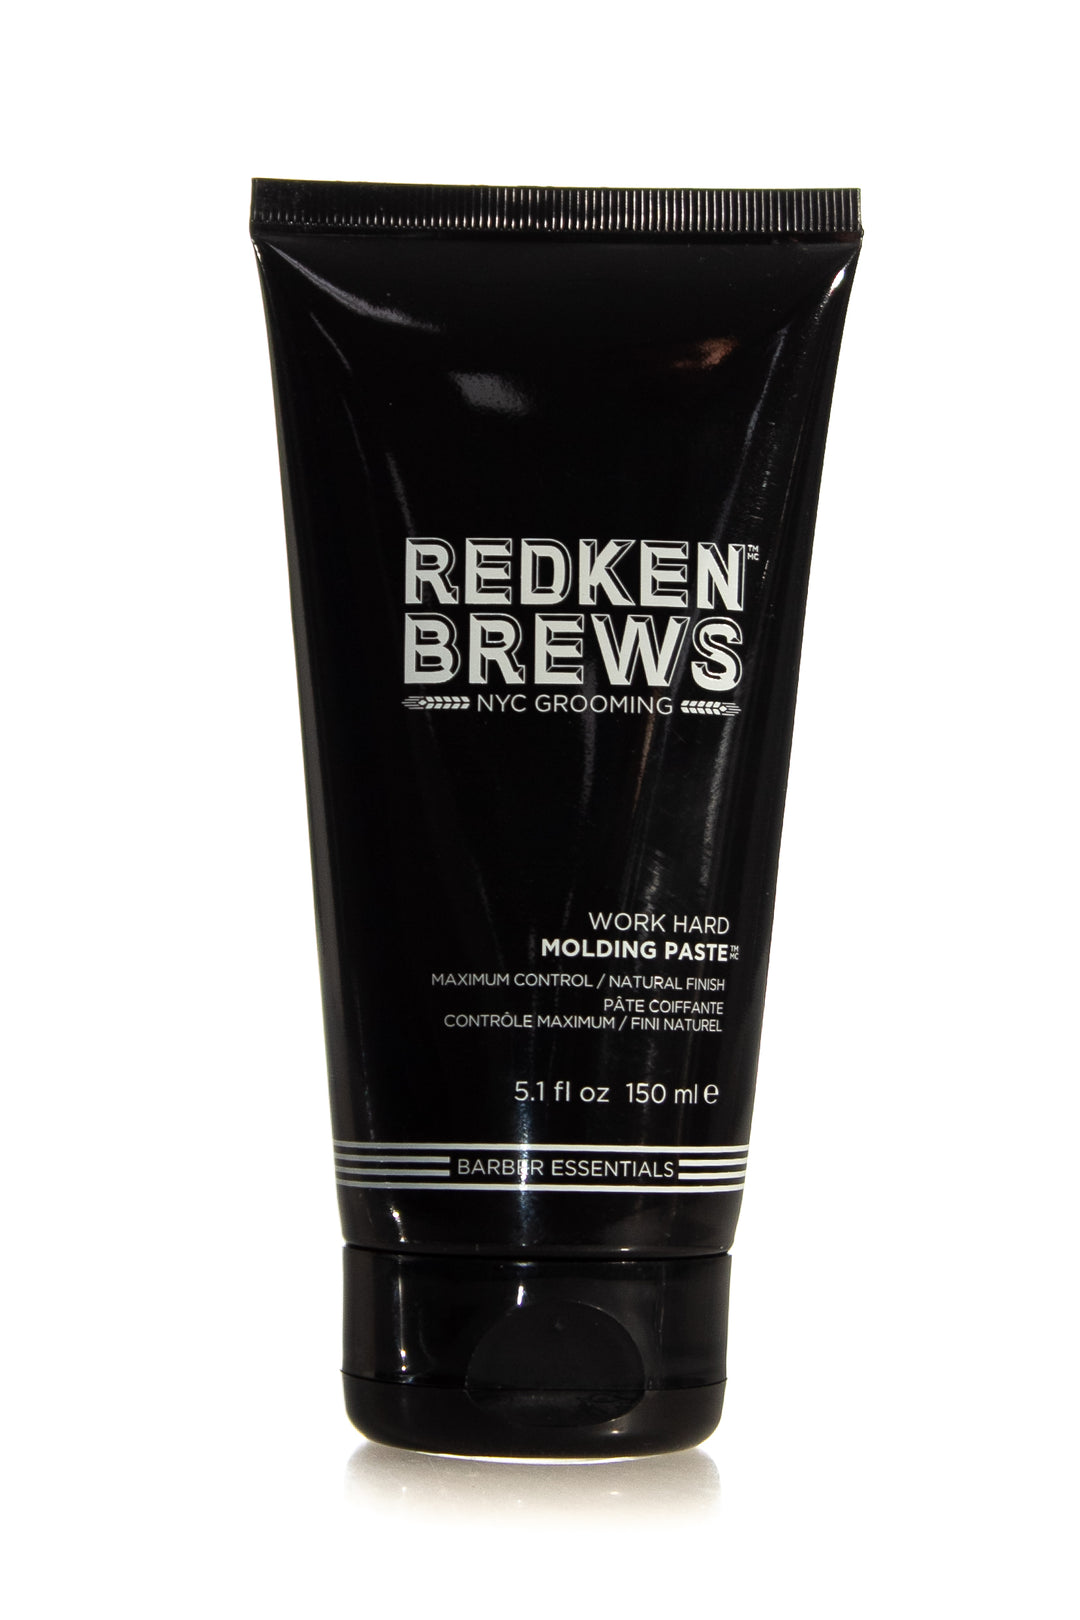 redken-brews-work-hard-molding-paste-150ml